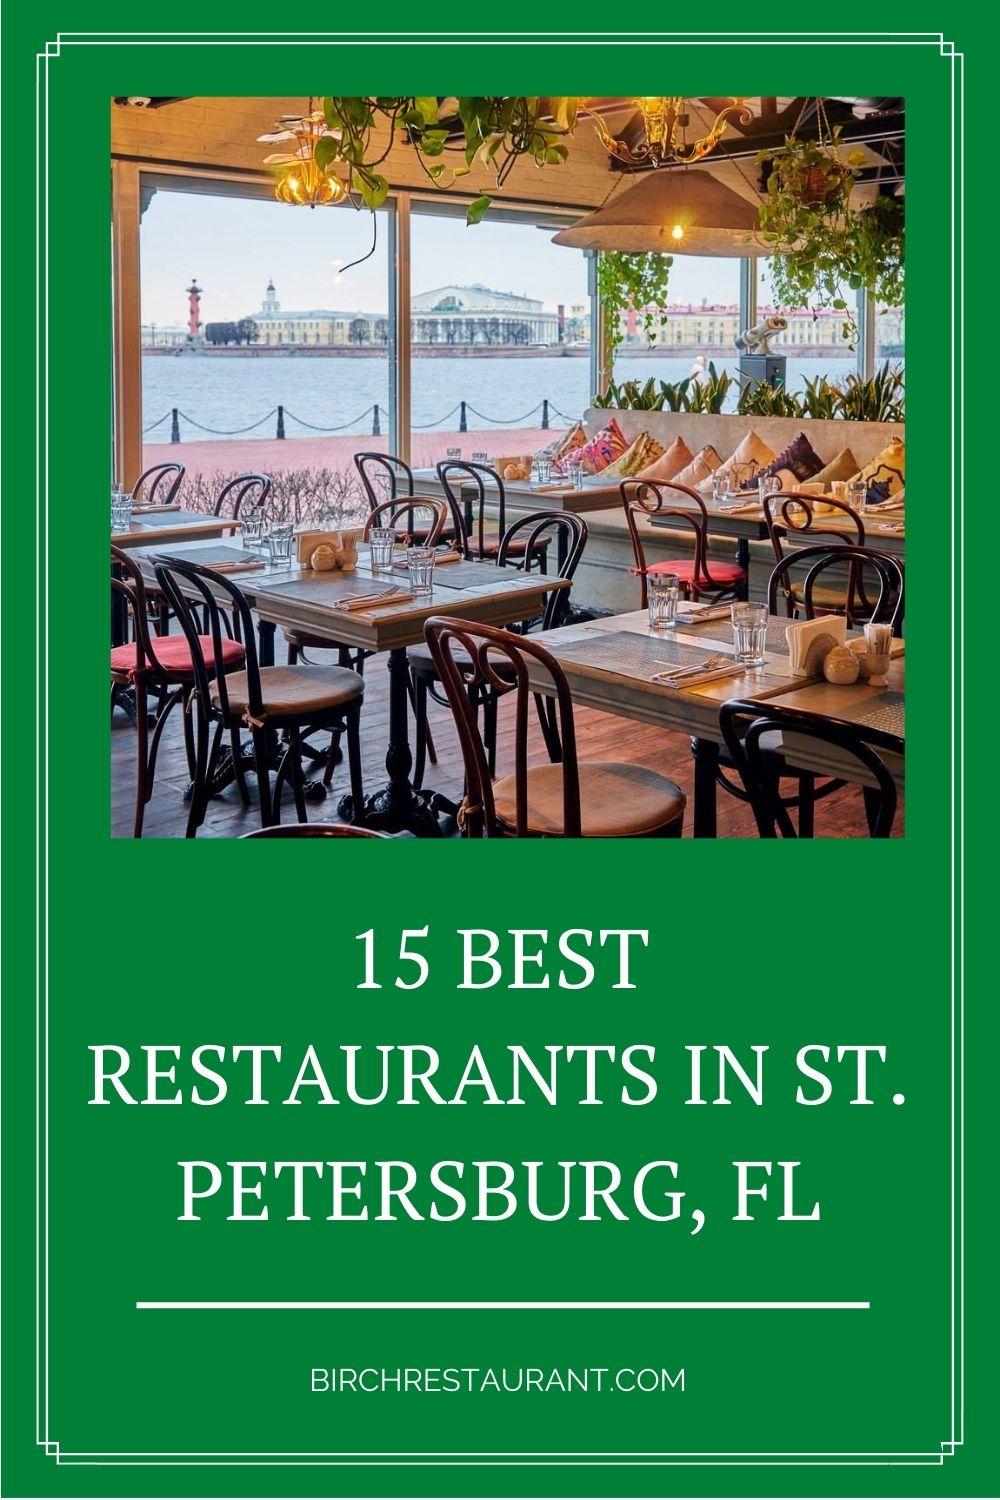 Best Restaurants in St. Petersburg